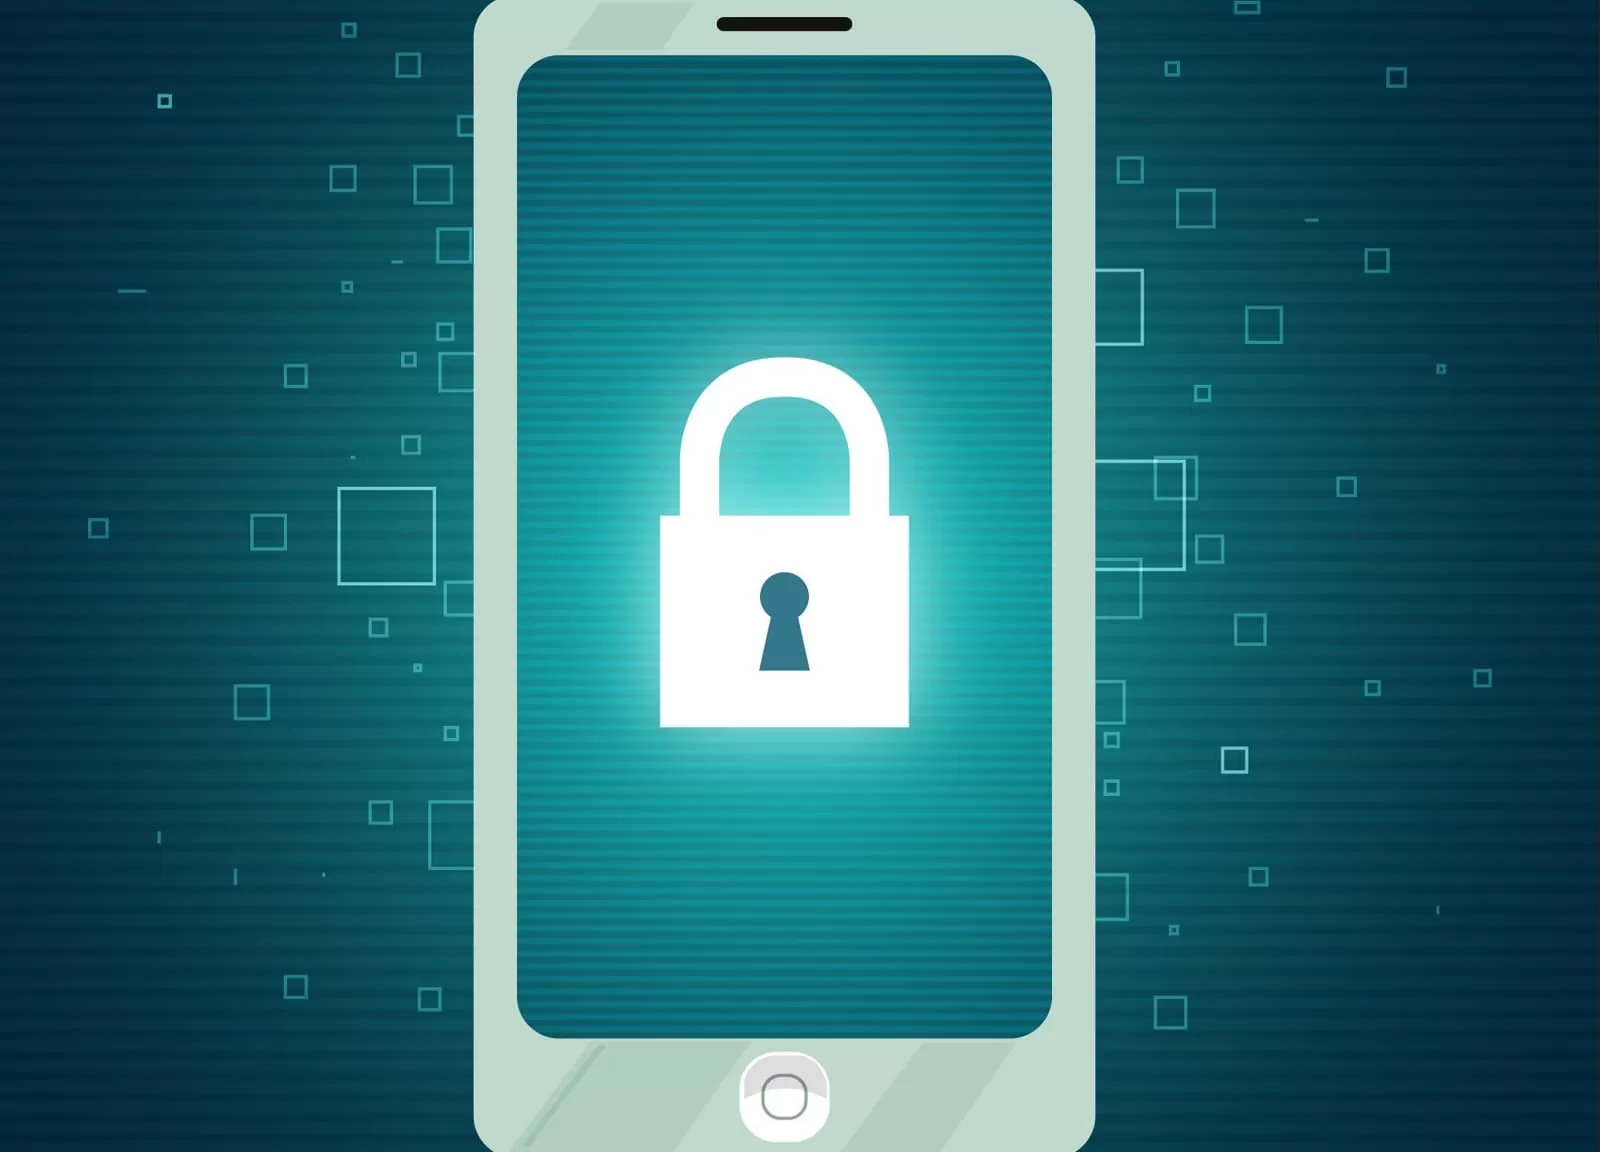 Hacking de smartphone: seu telefone pode ser invadido?